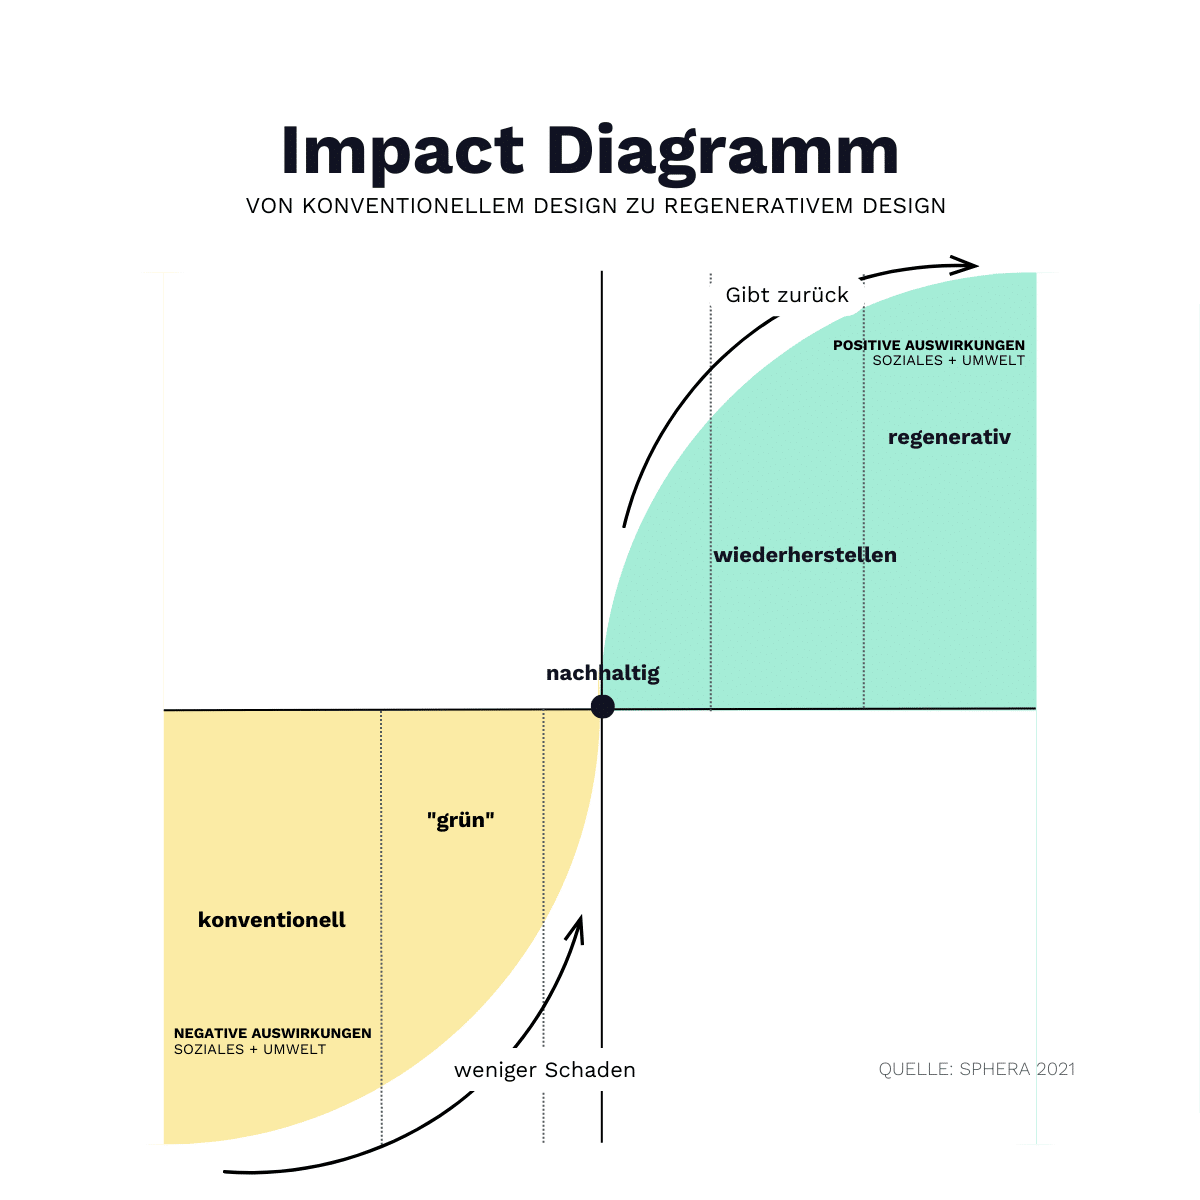 Diagramm der Auswirkungen: Vom konventionellen Design zum regenerativen Design